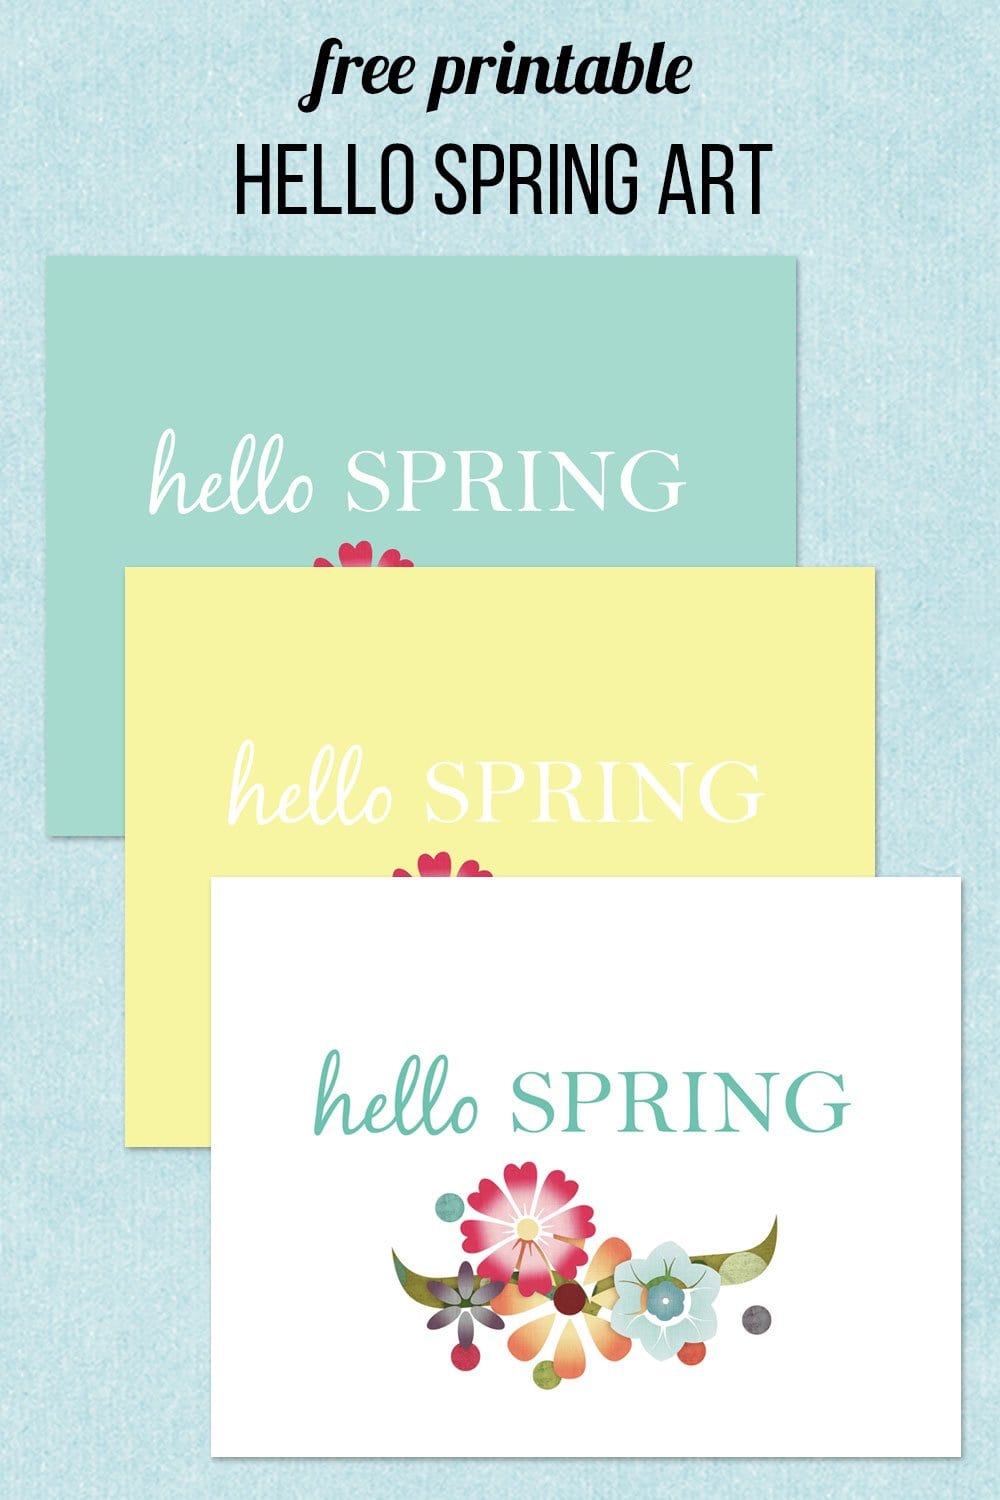 free printable hello spring